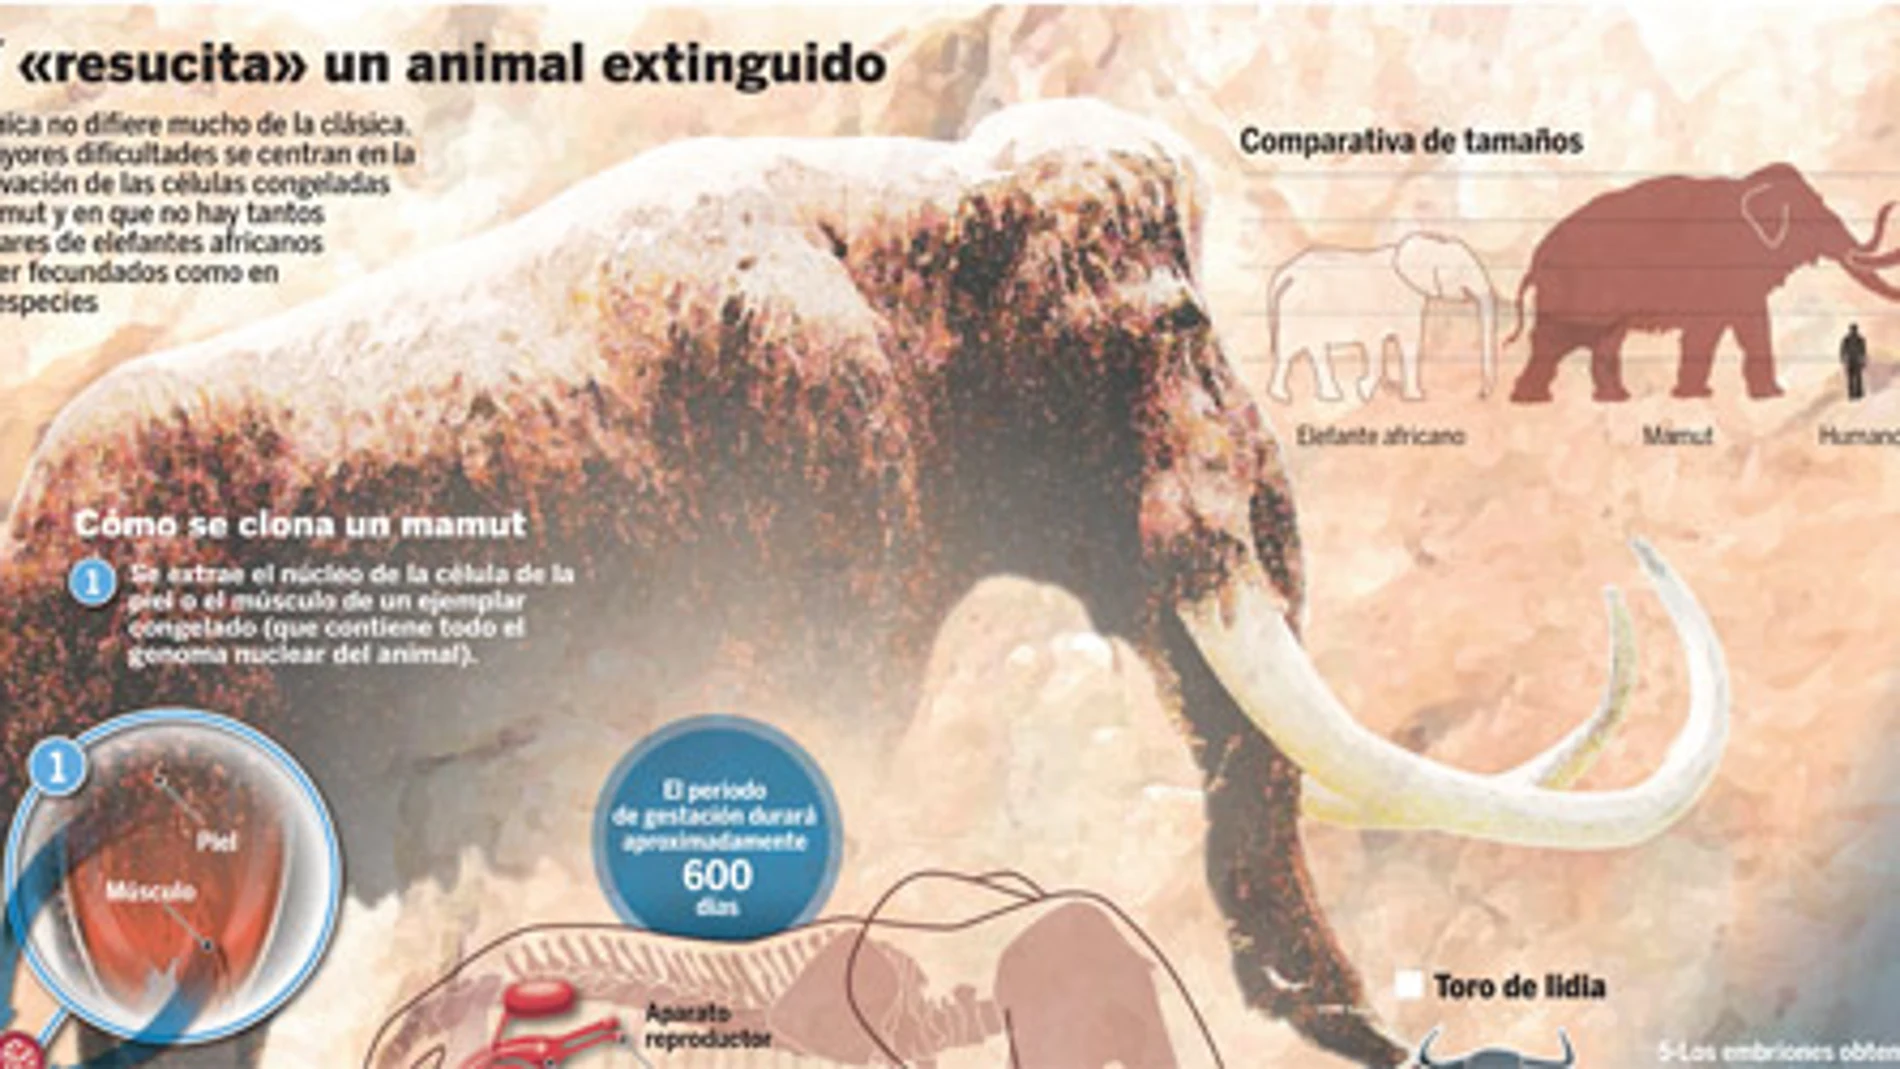 Clonación: el mamut volverá a cruzar los hielos